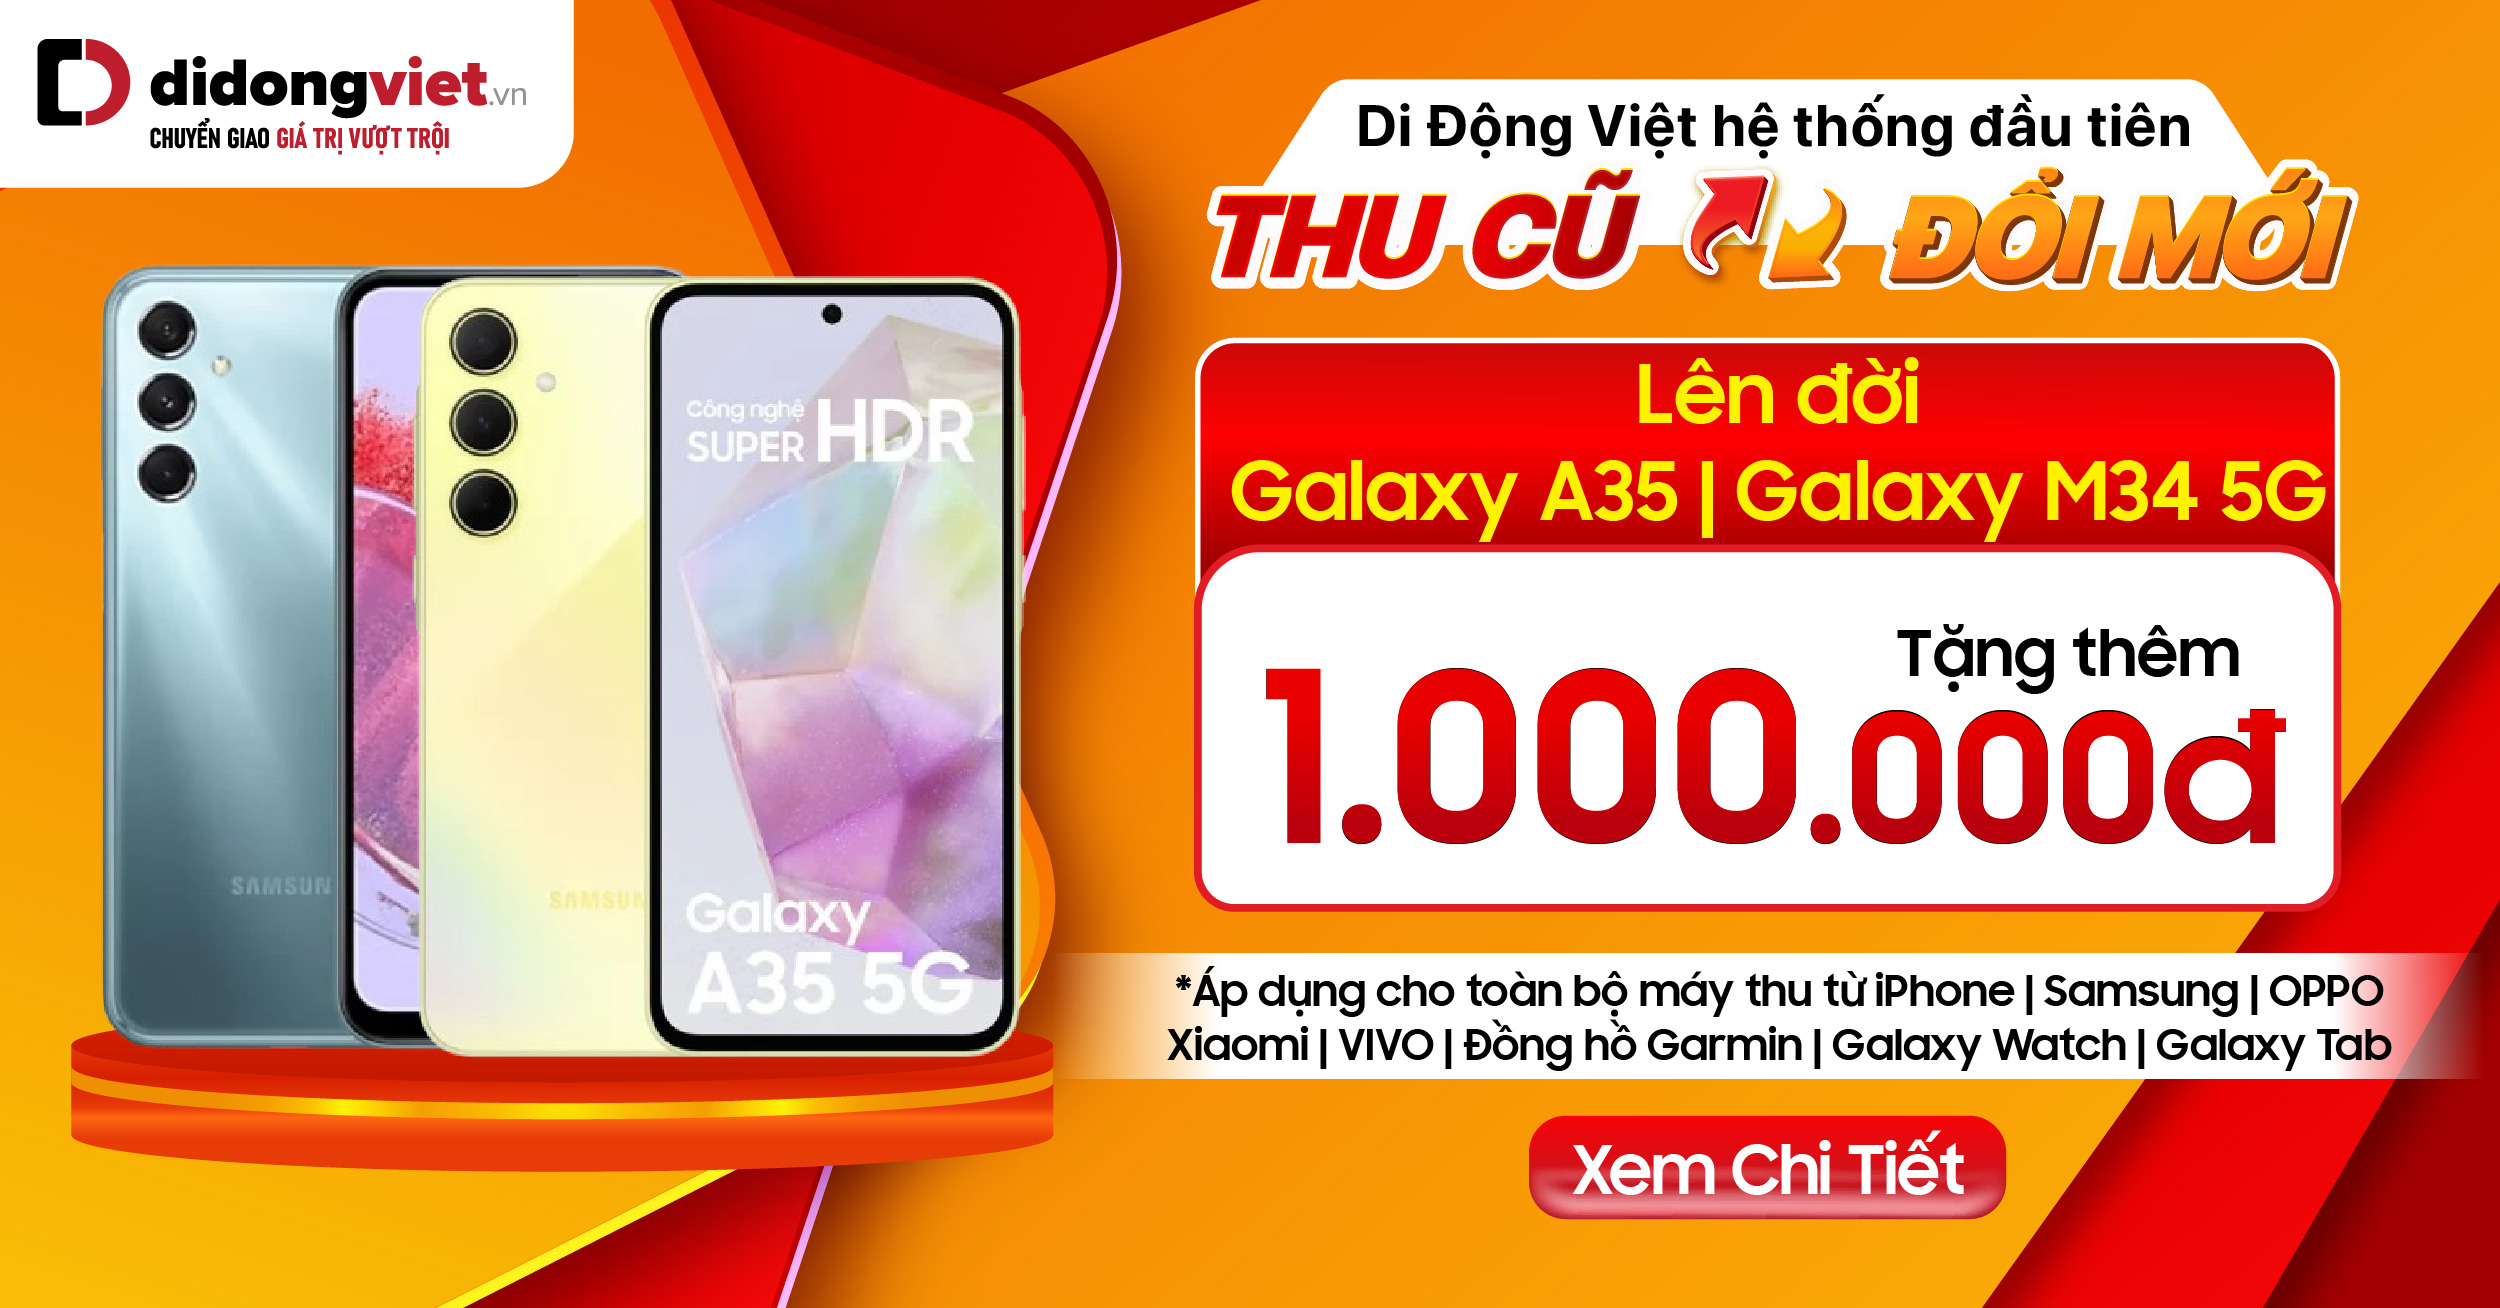 Ưu đãi Galaxy A35 & Galaxy M34 tại Di Động Việt: Giảm thêm 1 triệu khi thu cũ đổi mới